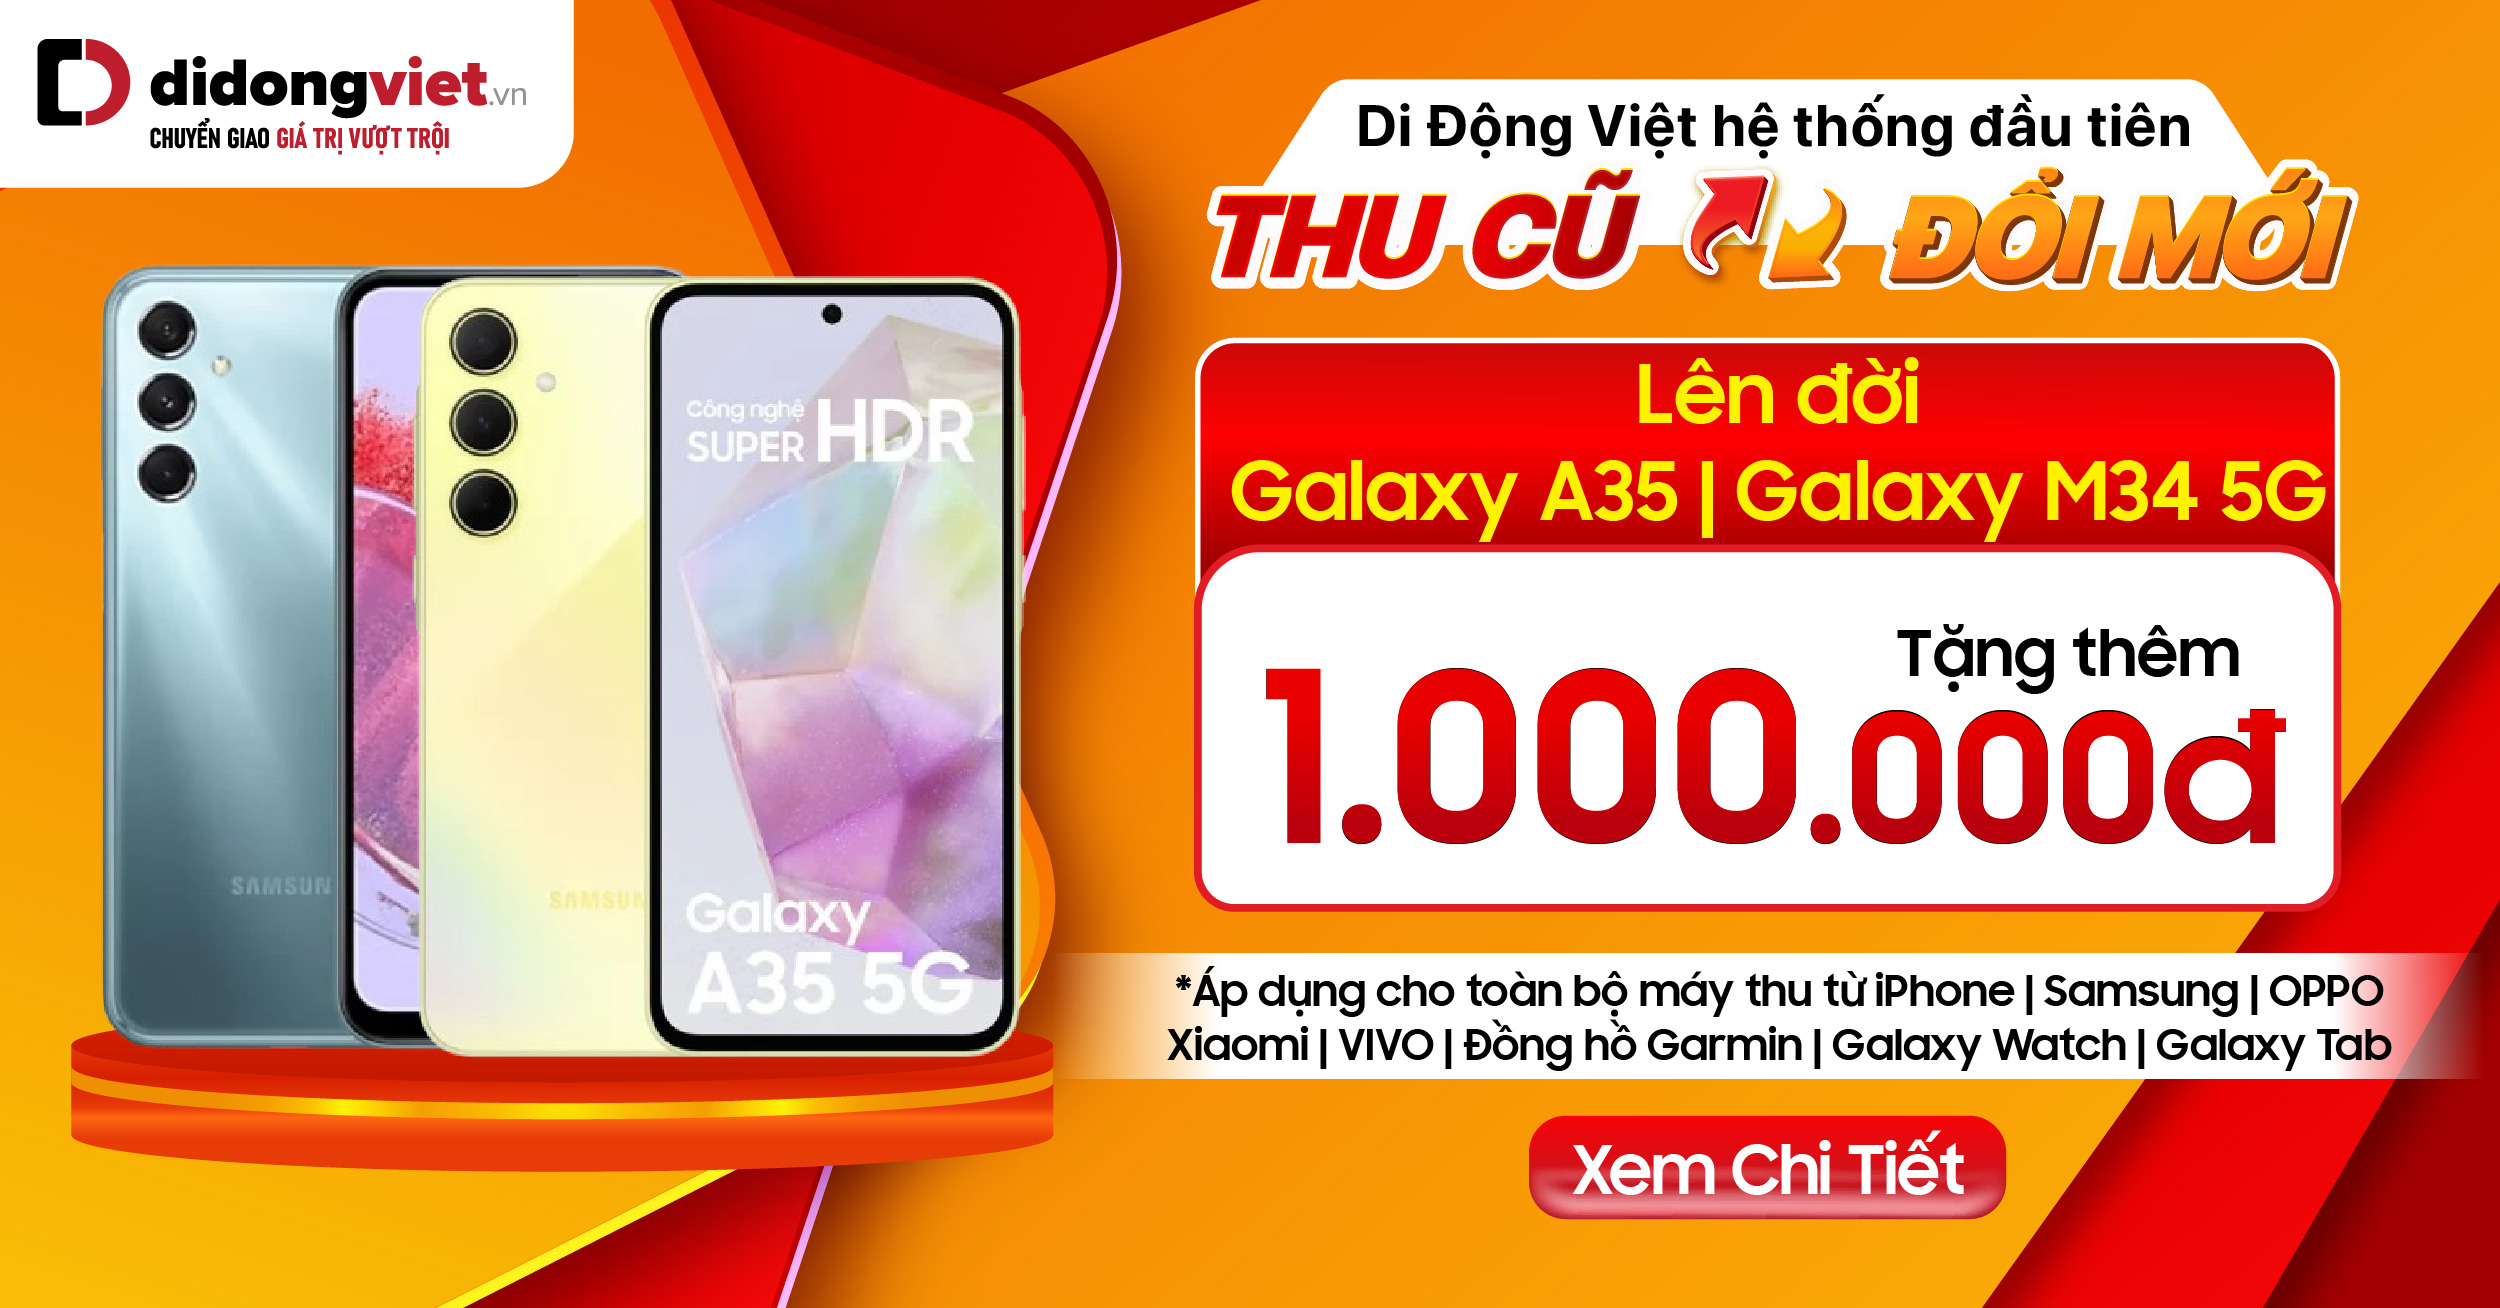 Ưu đãi Galaxy A35 & Galaxy M34 tại Di Động Việt: Giảm thêm 1 triệu khi thu cũ đổi mới